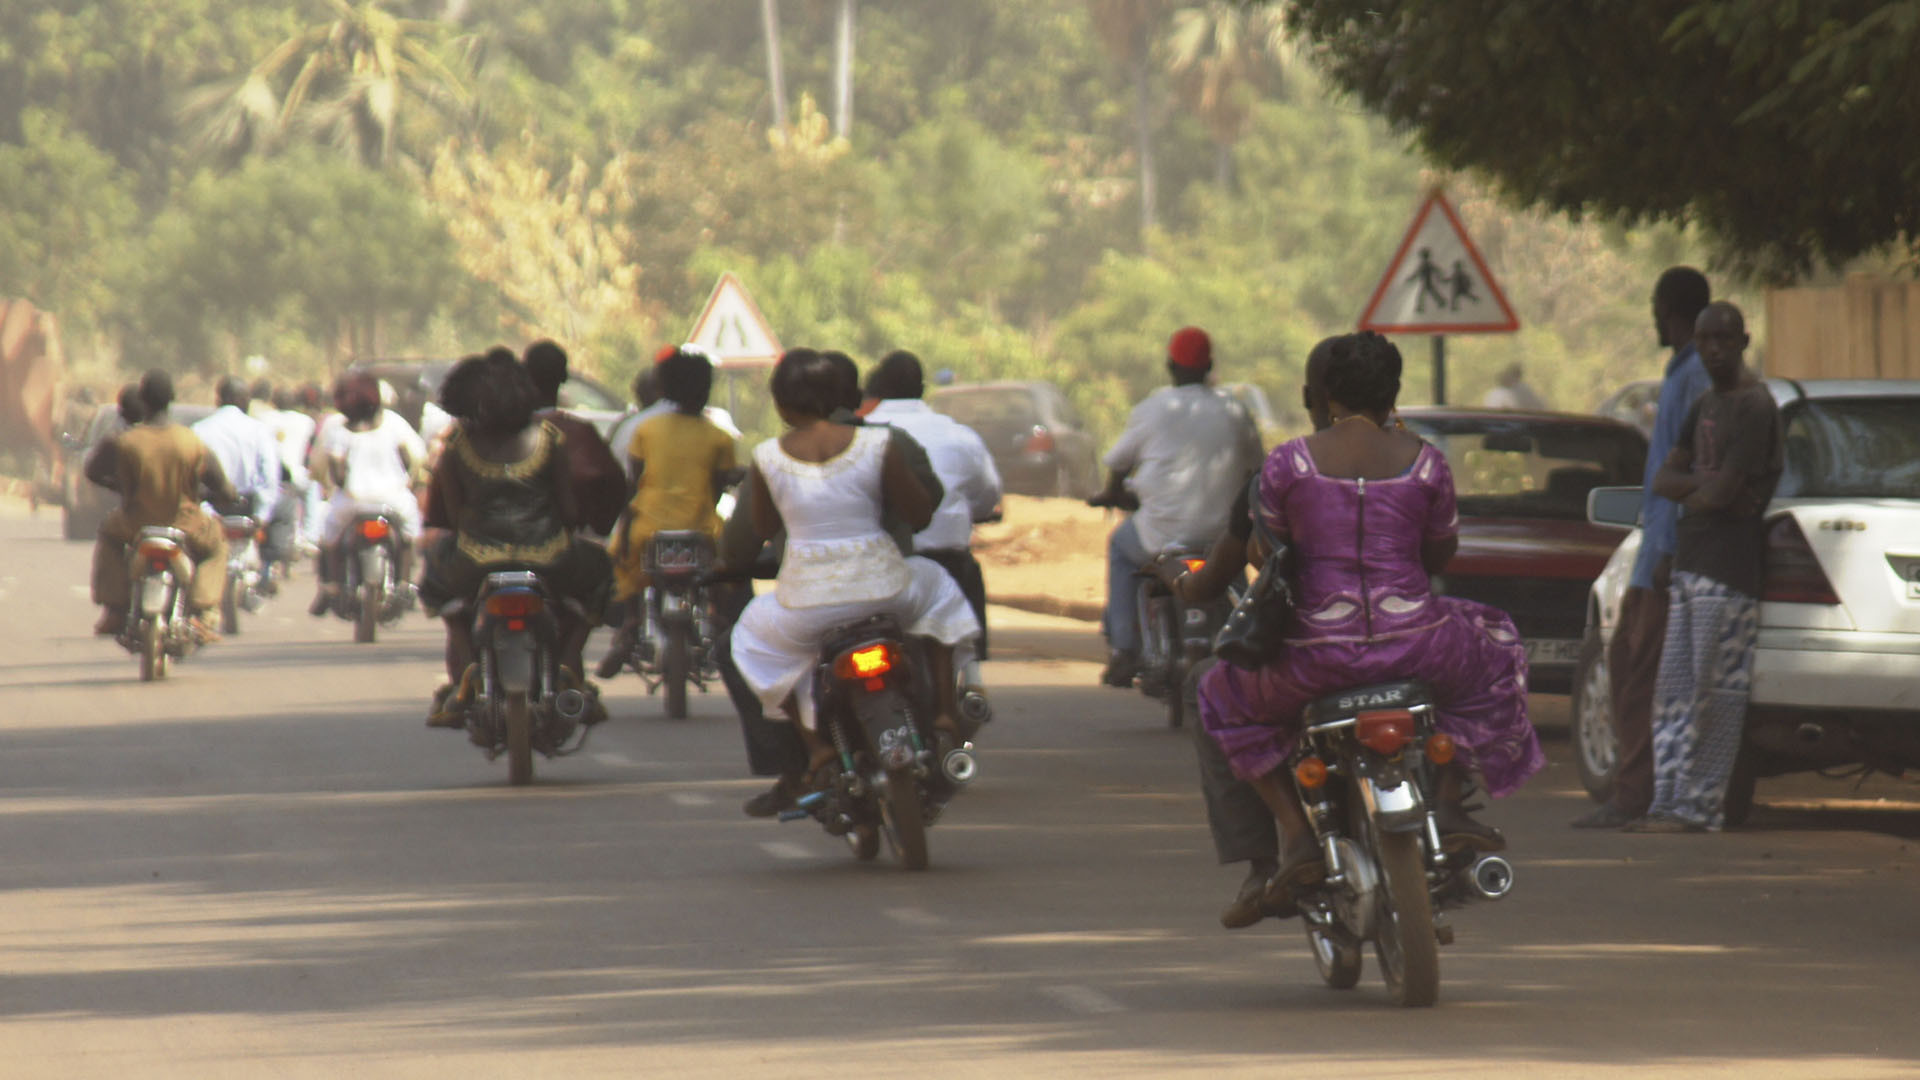 Les moto-taxi: un moyen de transport très populaire au Niger. (Photo: Flickr/
Michael Panse/CC BY-ND 2.0)